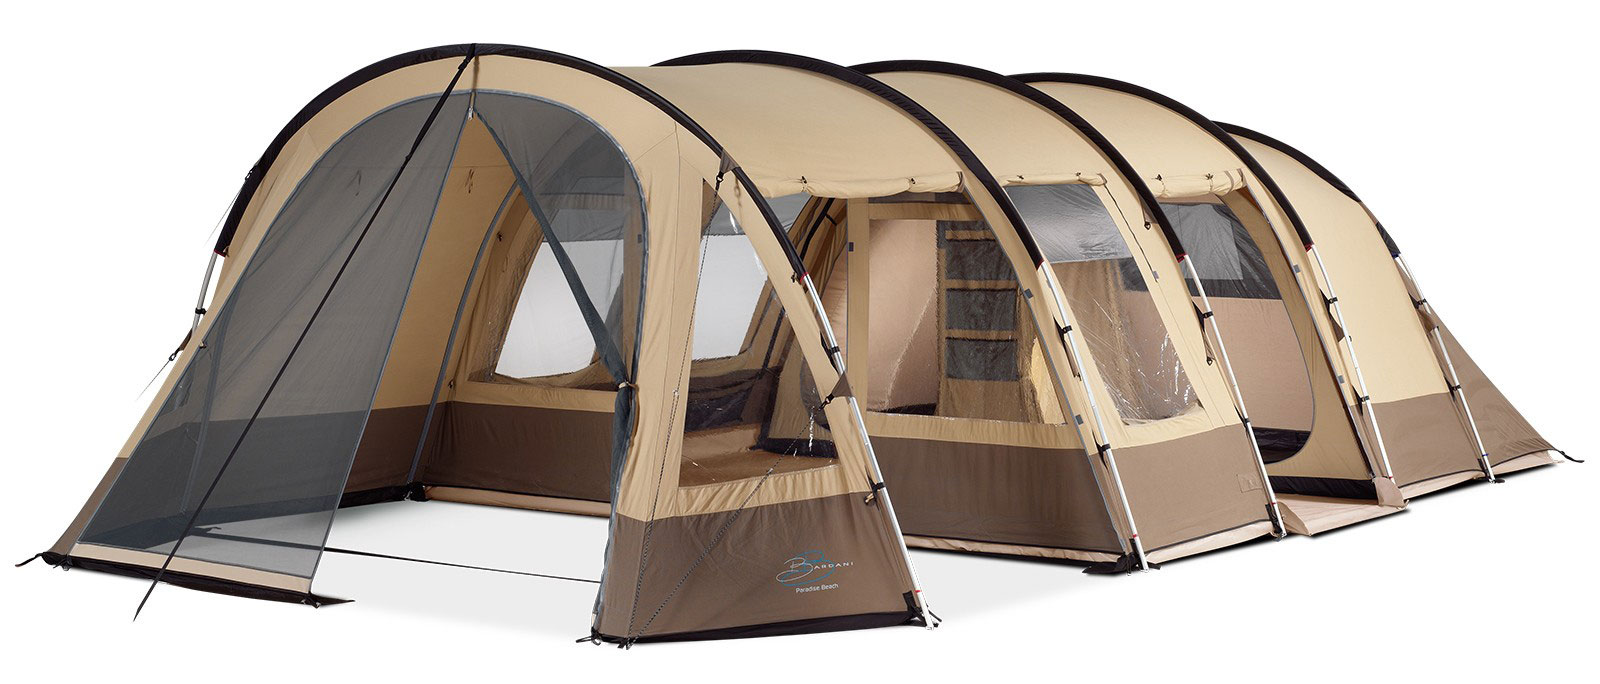 Tente de camping hollandaise